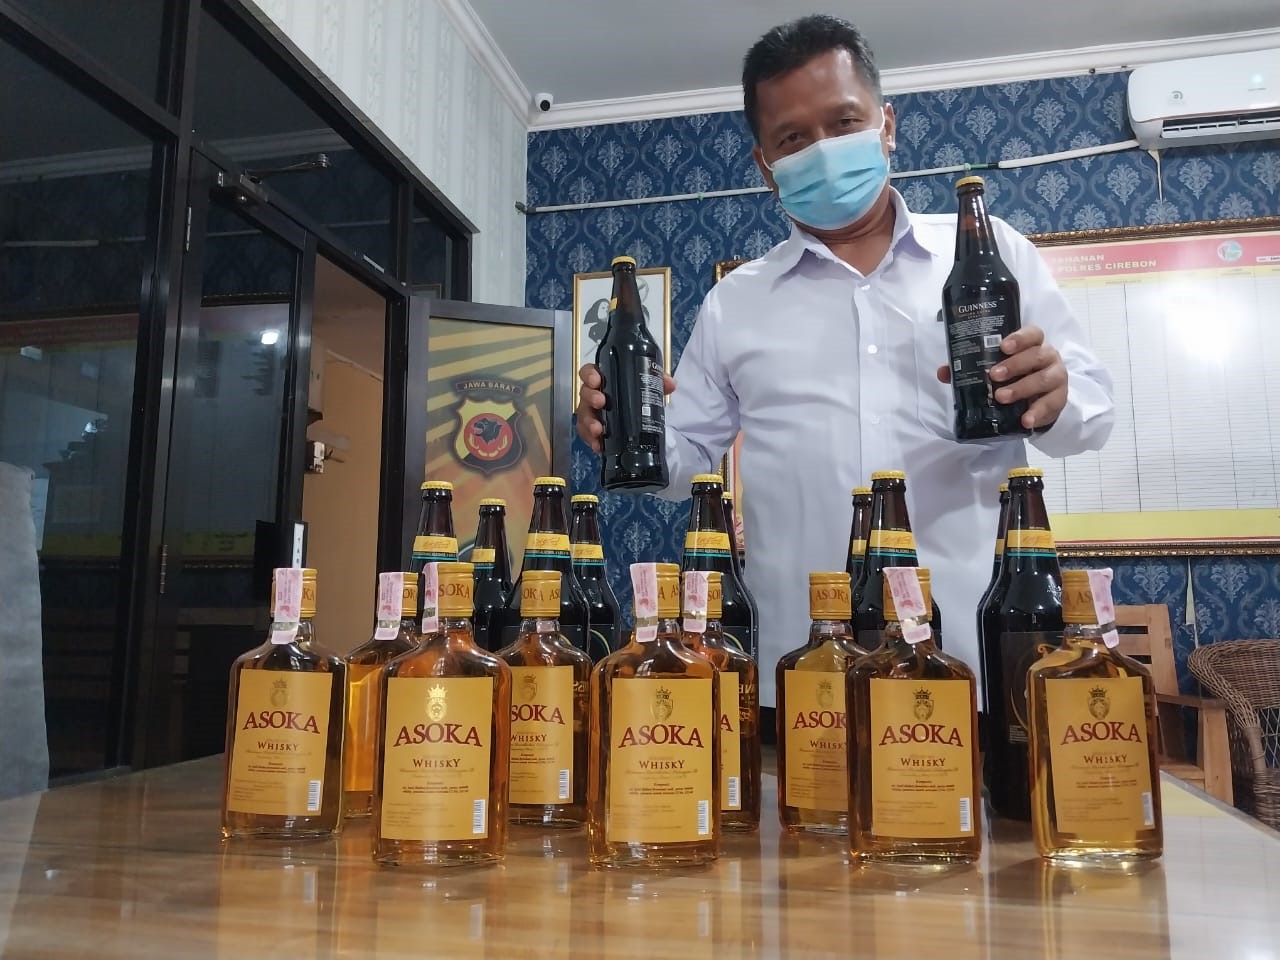 Razia  Miras, Polresta Cirebon Sita Ratusan Botol Miras, Disini Tempatnya